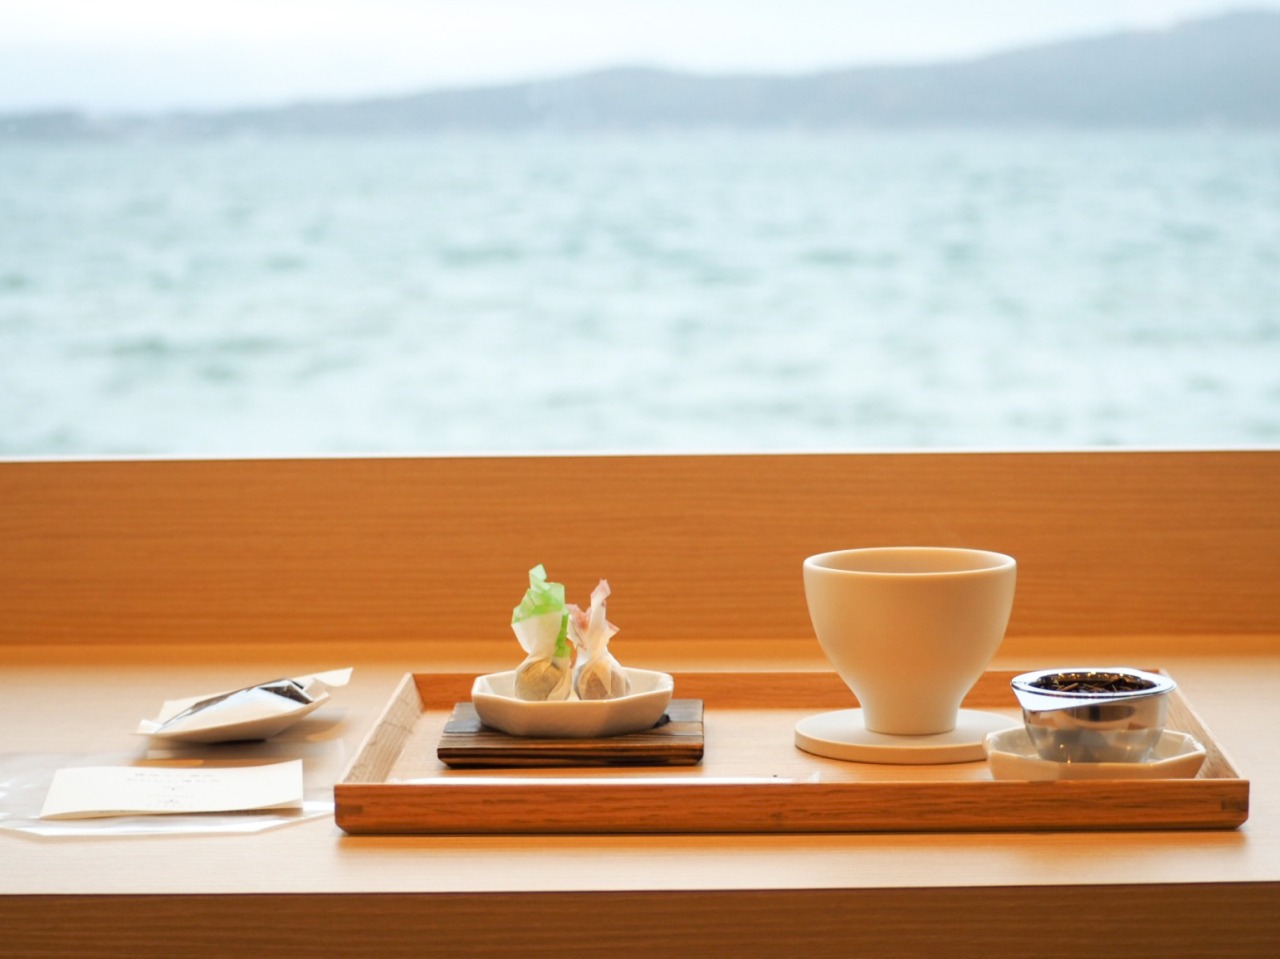 和倉温泉でほっとひと息、からだ喜ぶランチとスイーツ巡り&海を眺めてほうじ茶焙煎体験を楽しむ